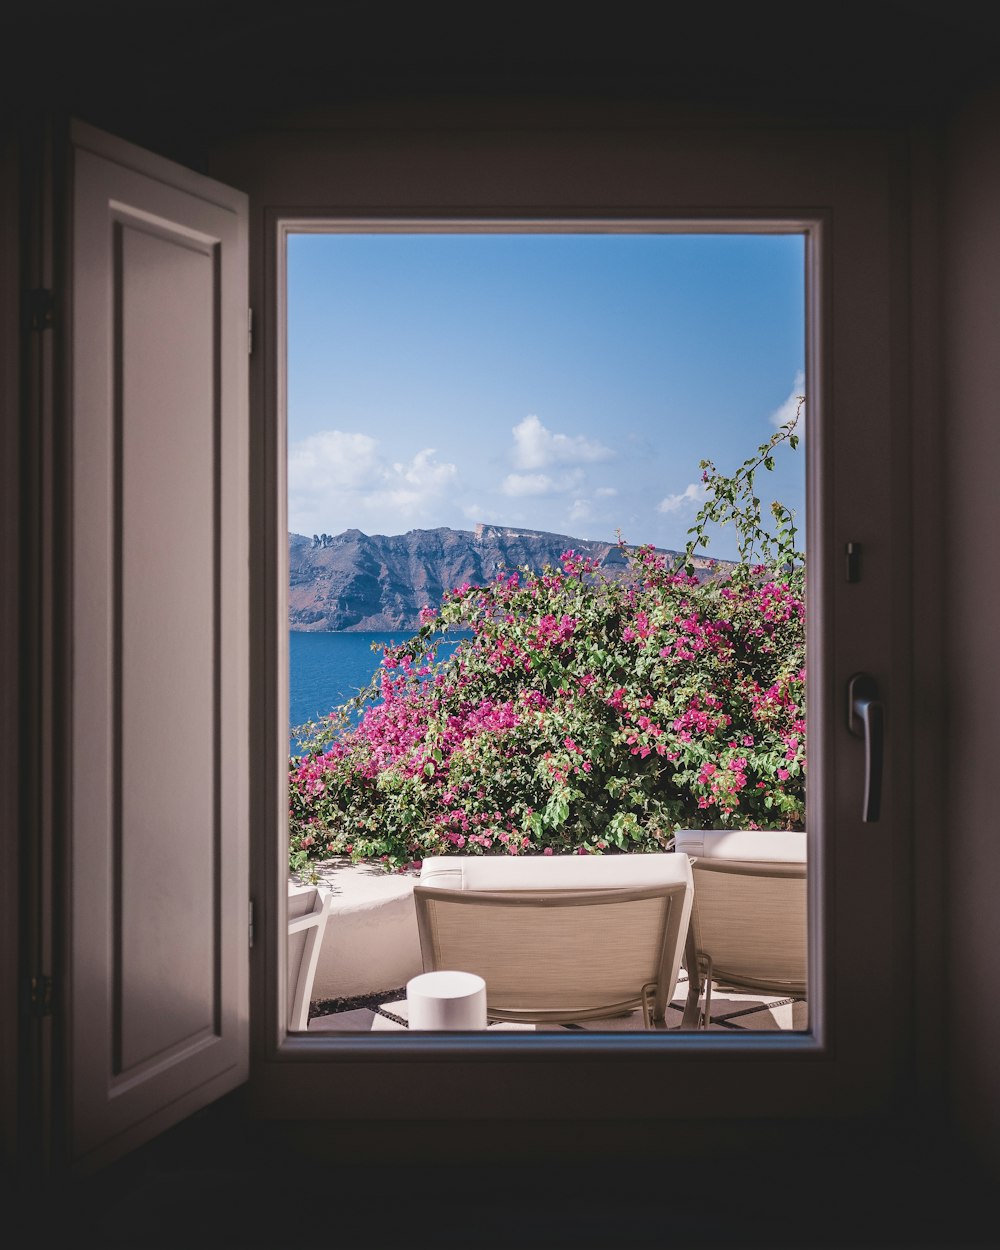 ventana abierta que muestra tumbona al aire libre y flores rosas con fondo de montaña